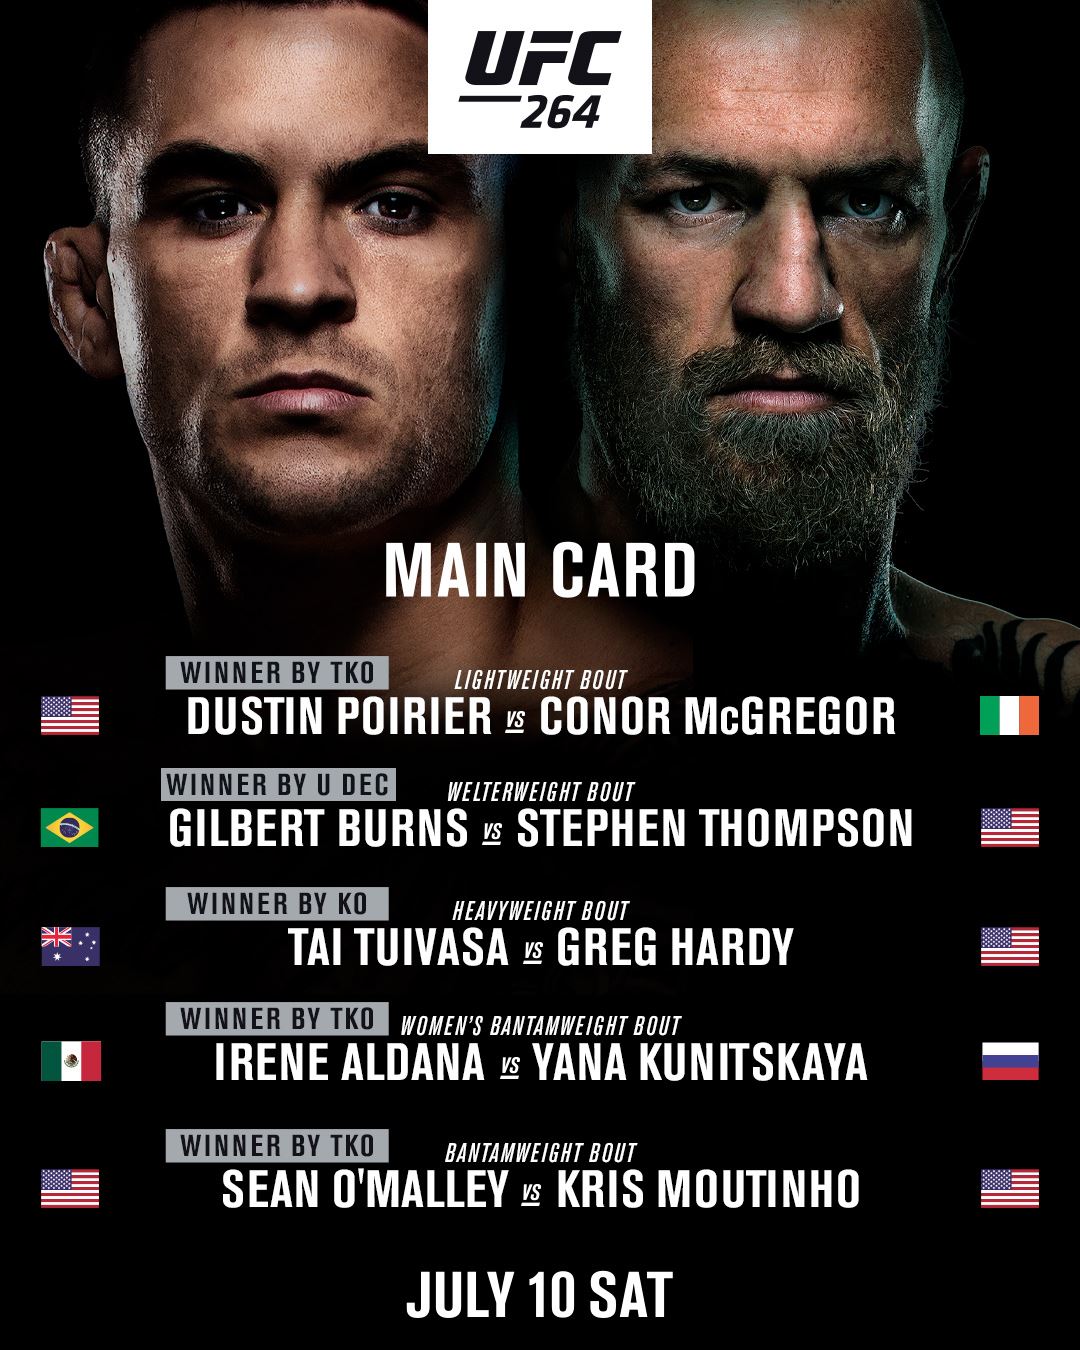 Výsledky hlavní karty UFC 264.